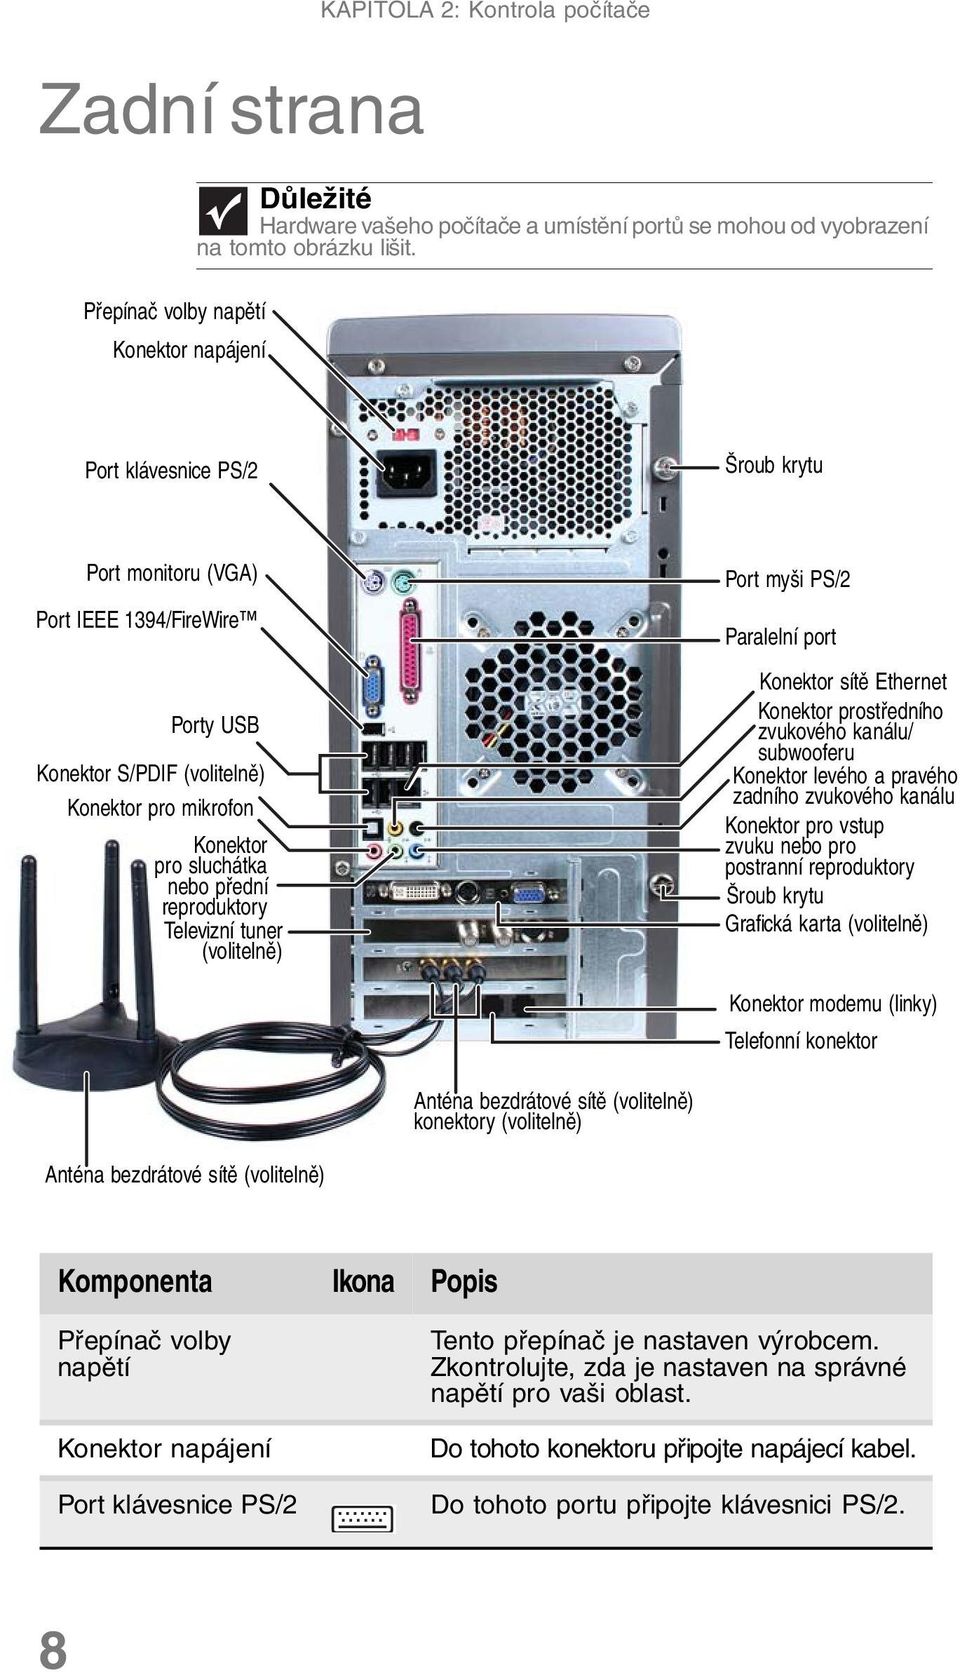 tuner (volitelně) Port myši PS/2 Paralelní port Konektor sítě Ethernet Konektor prostředního zvukového kanálu/ subwooferu Konektor levého a pravého zadního zvukového kanálu Konektor pro vstup zvuku